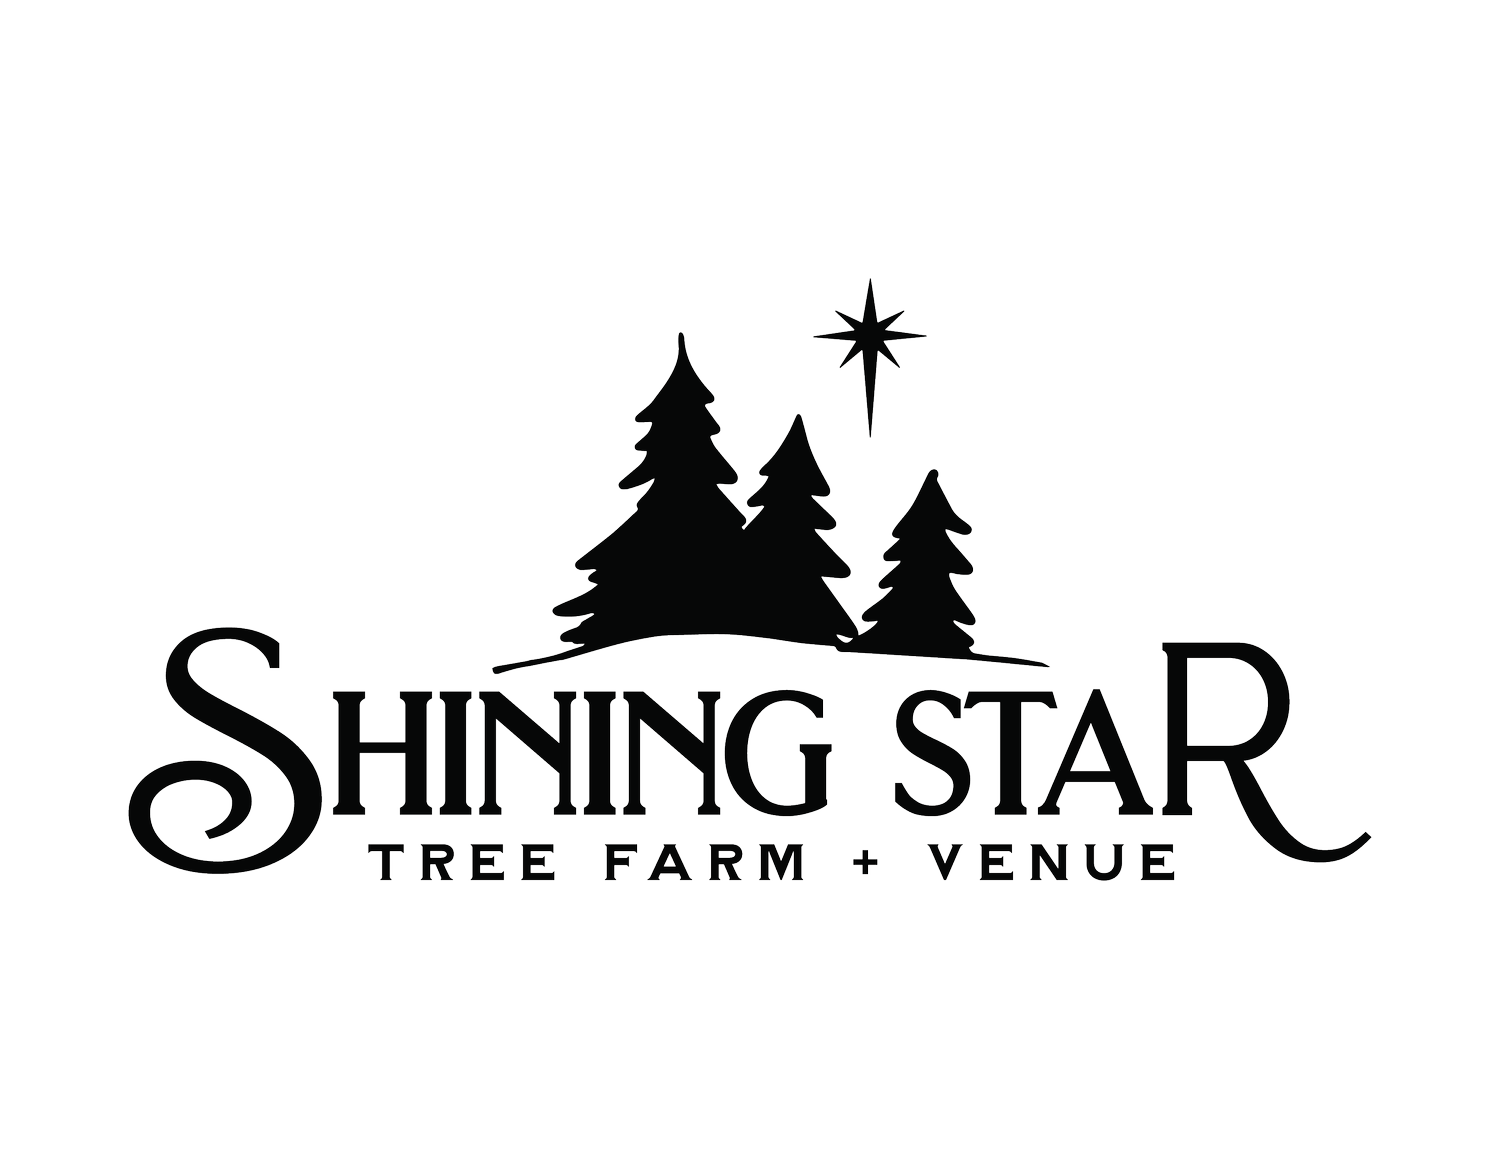 Shining Star Tree Farm + Venue